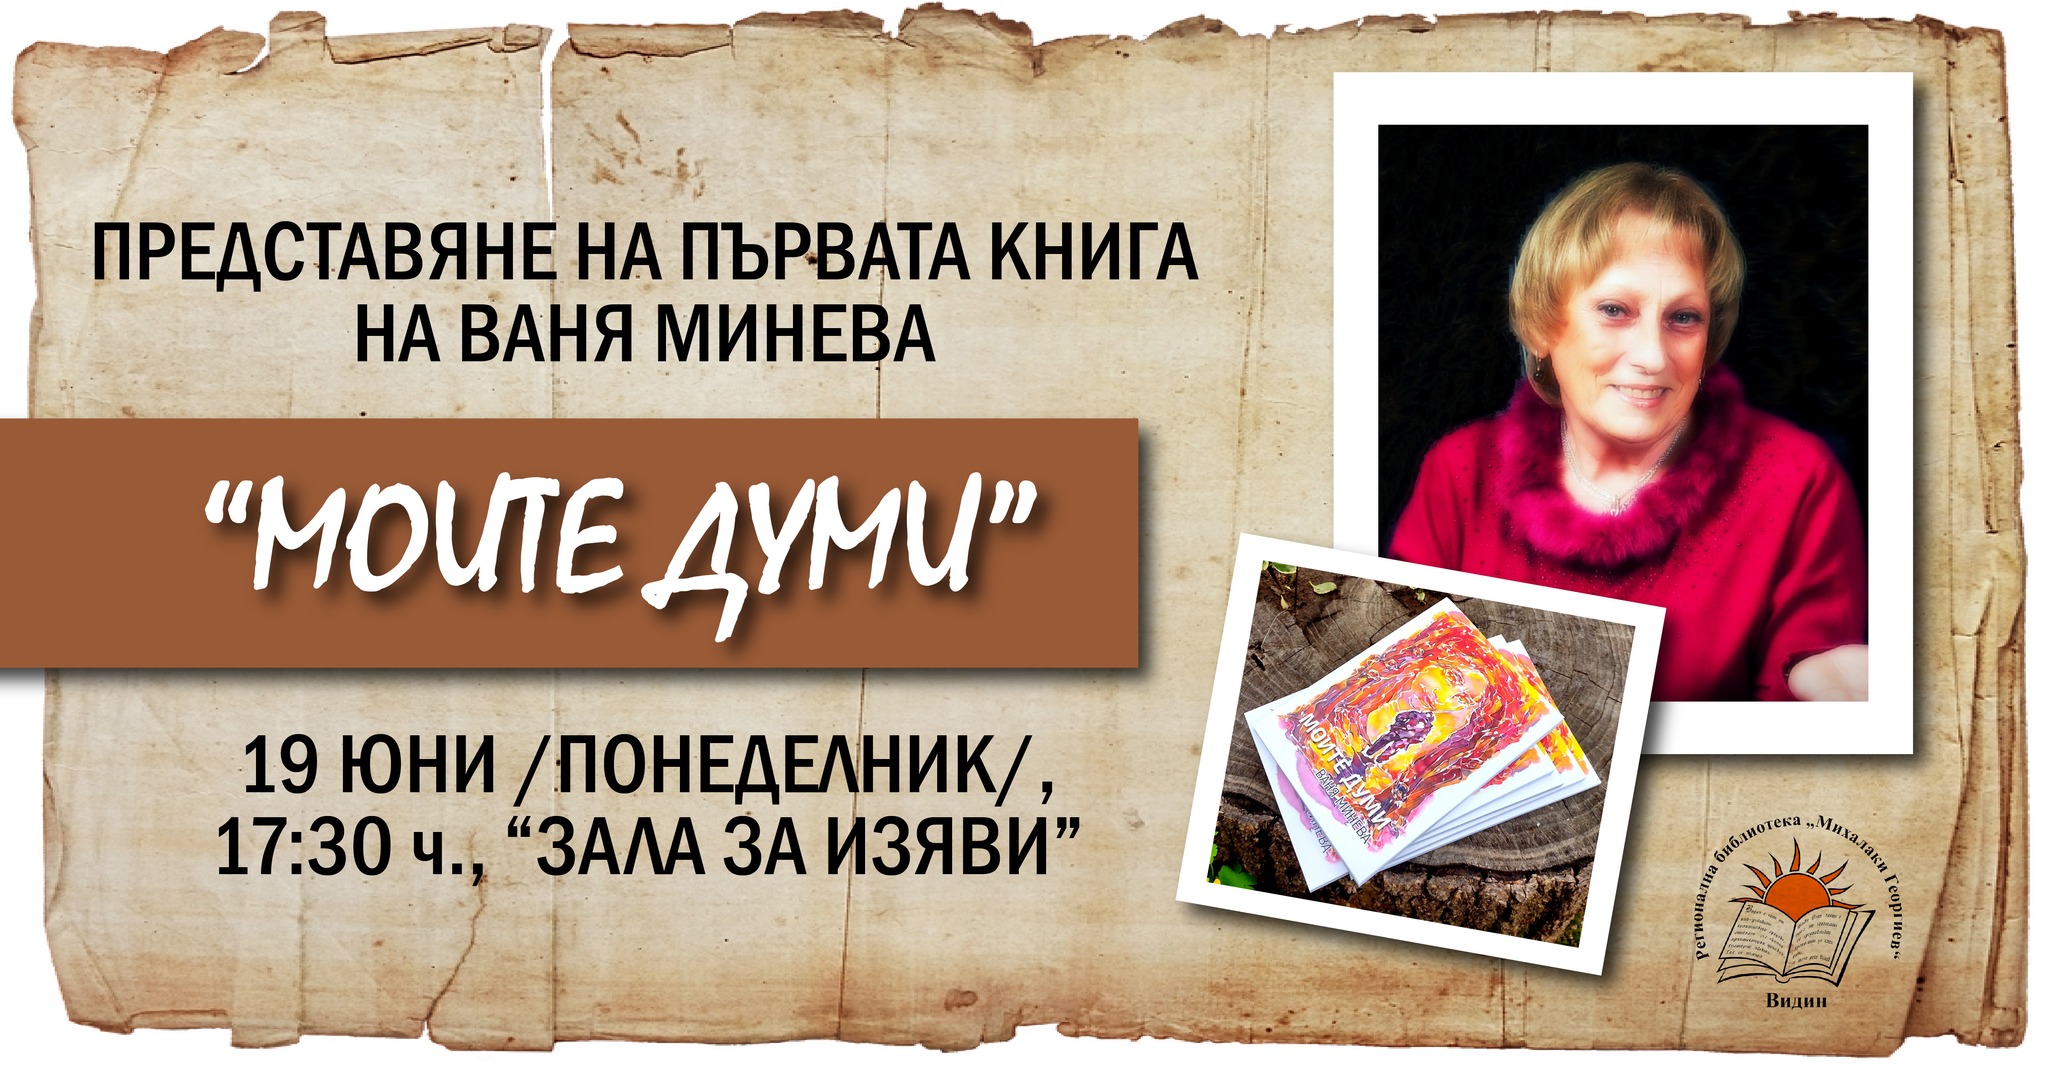 Представяне на книгата "Моите думи" от Ваня Минева